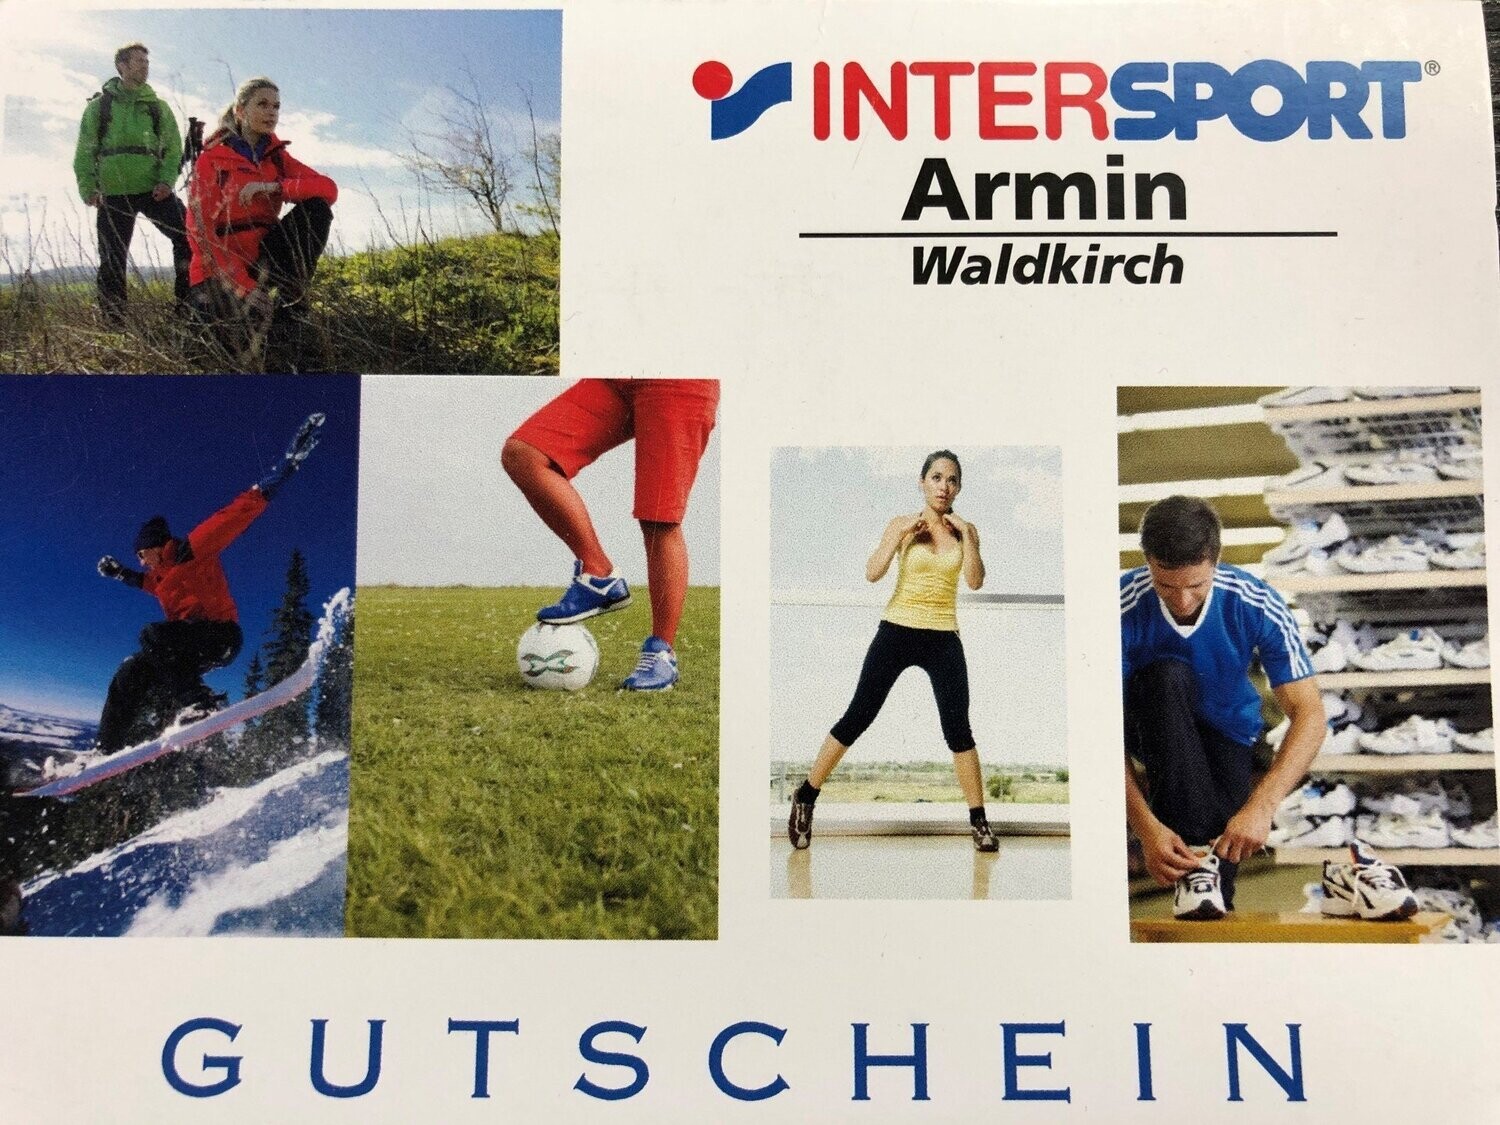 Geschenkgutschein Intersport Armin